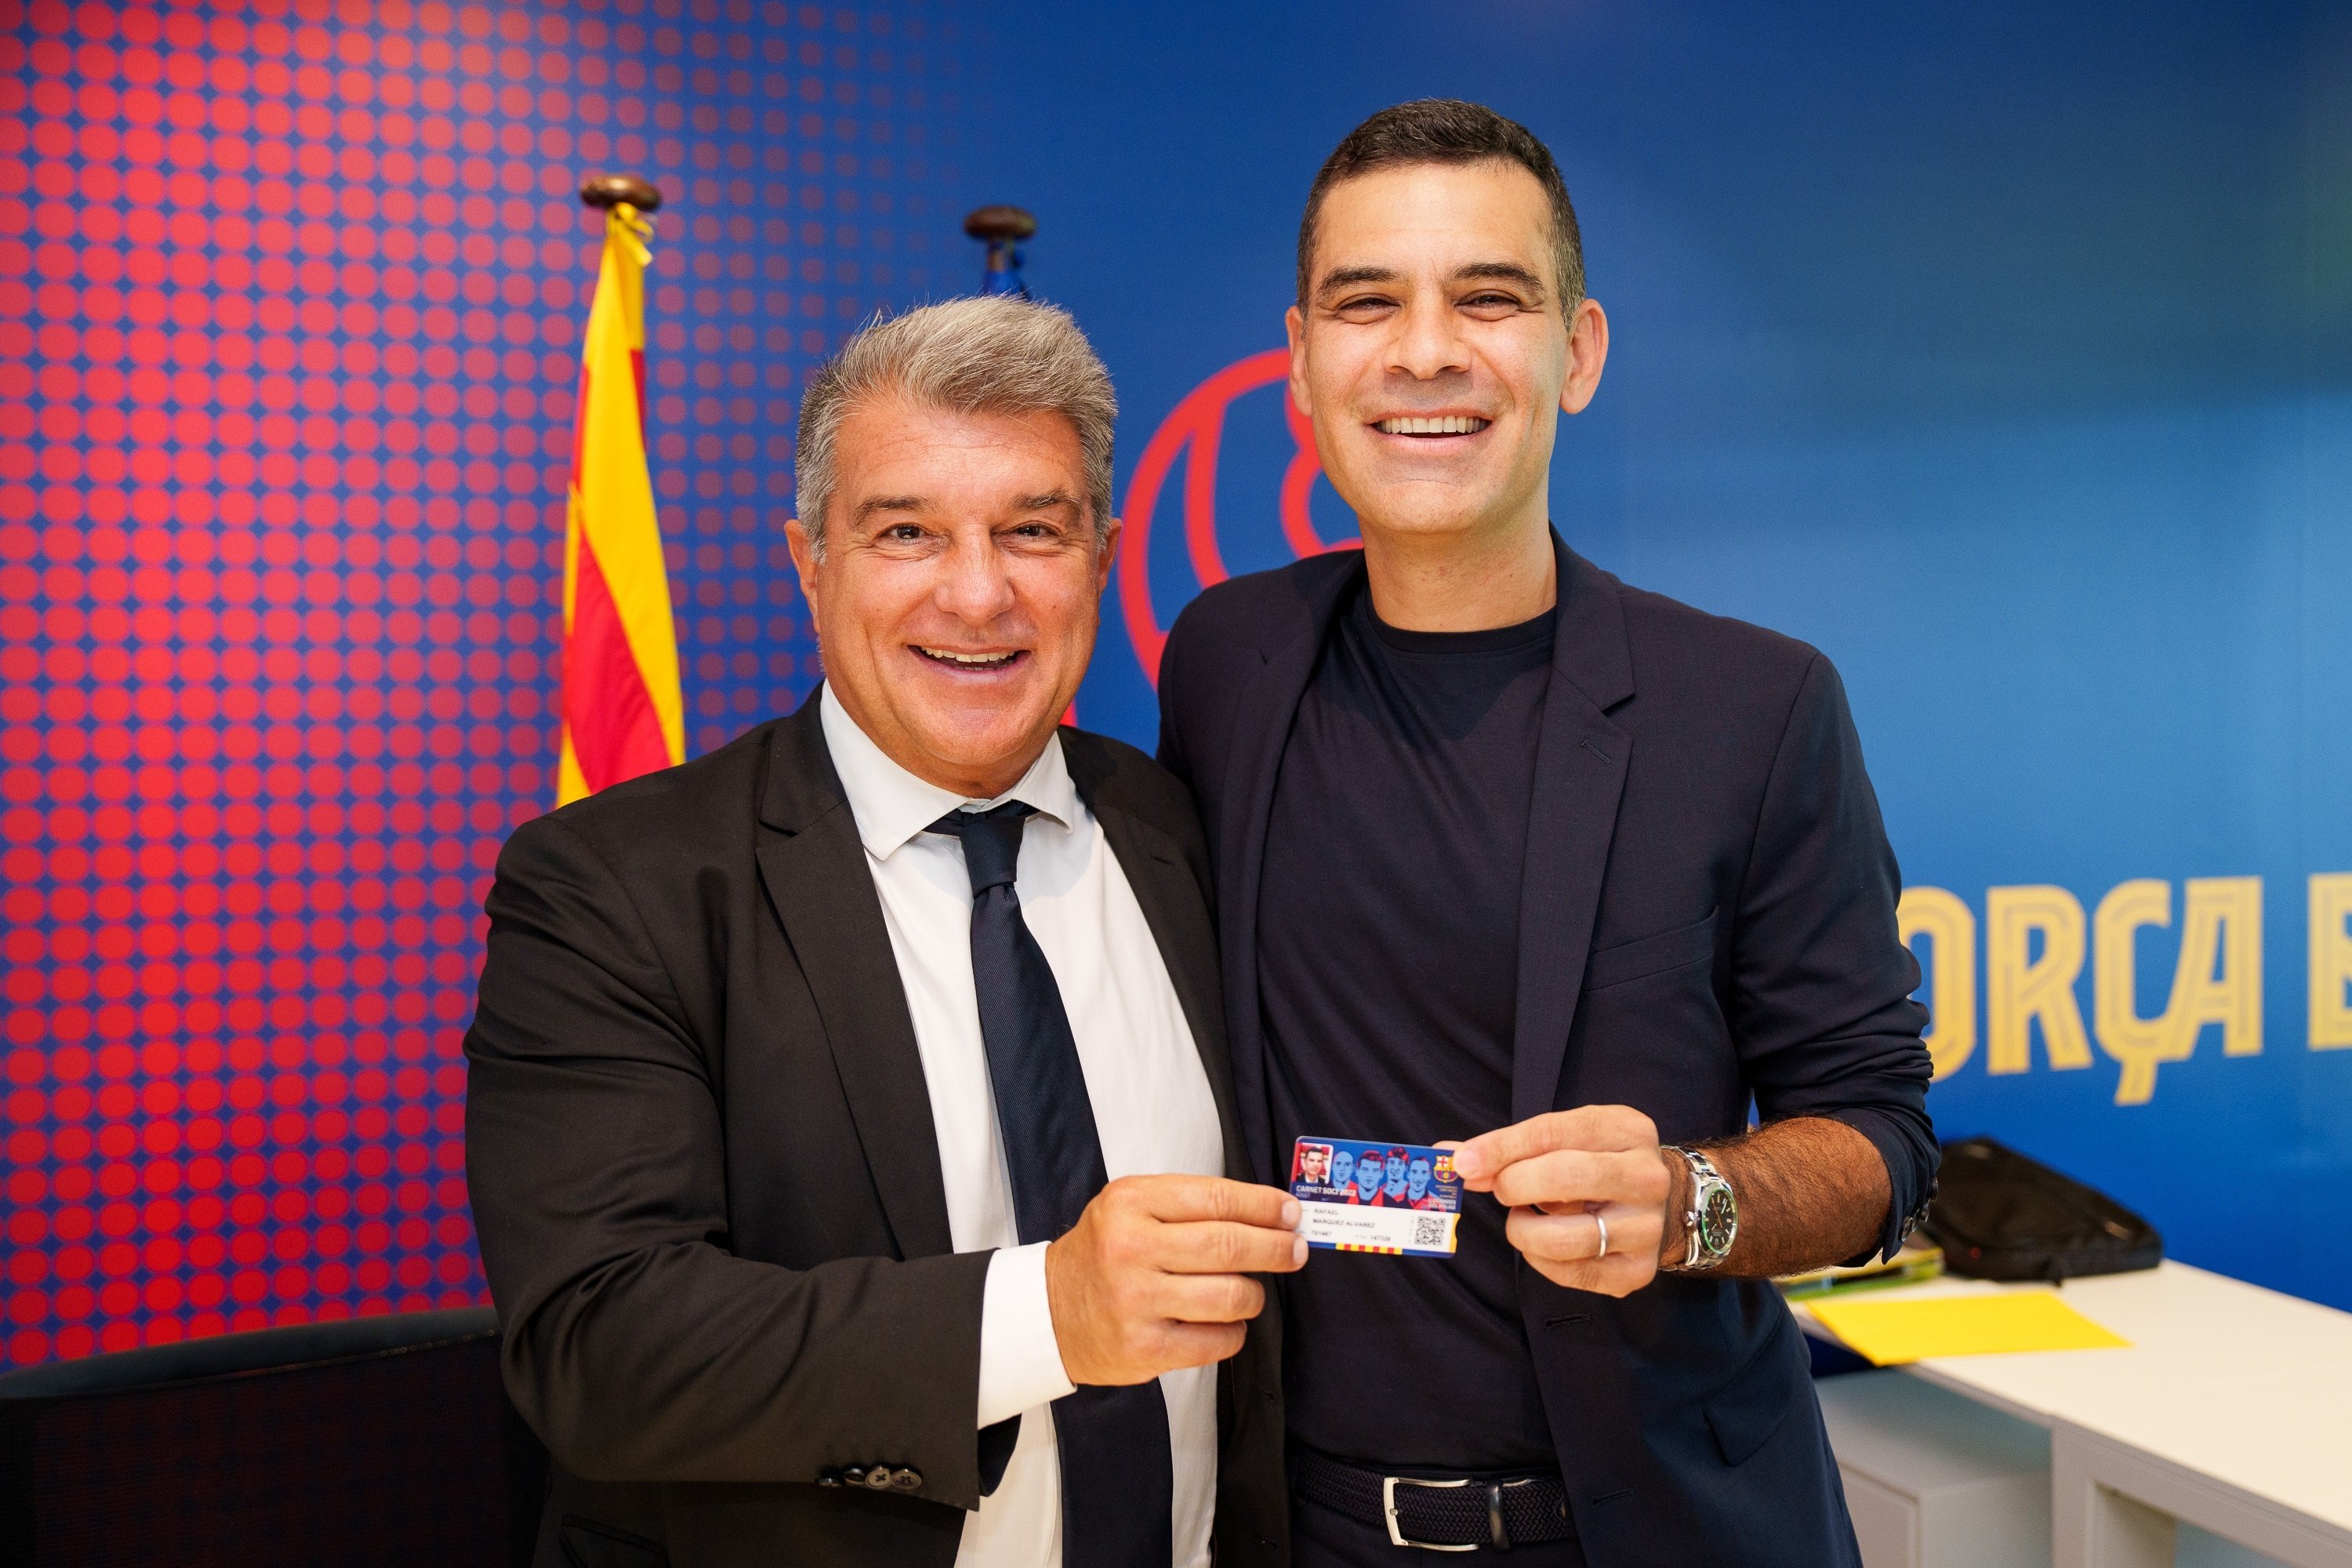 Rafa Márquez, avisat per agafar el relleu de Xavi Hernández en el Barça